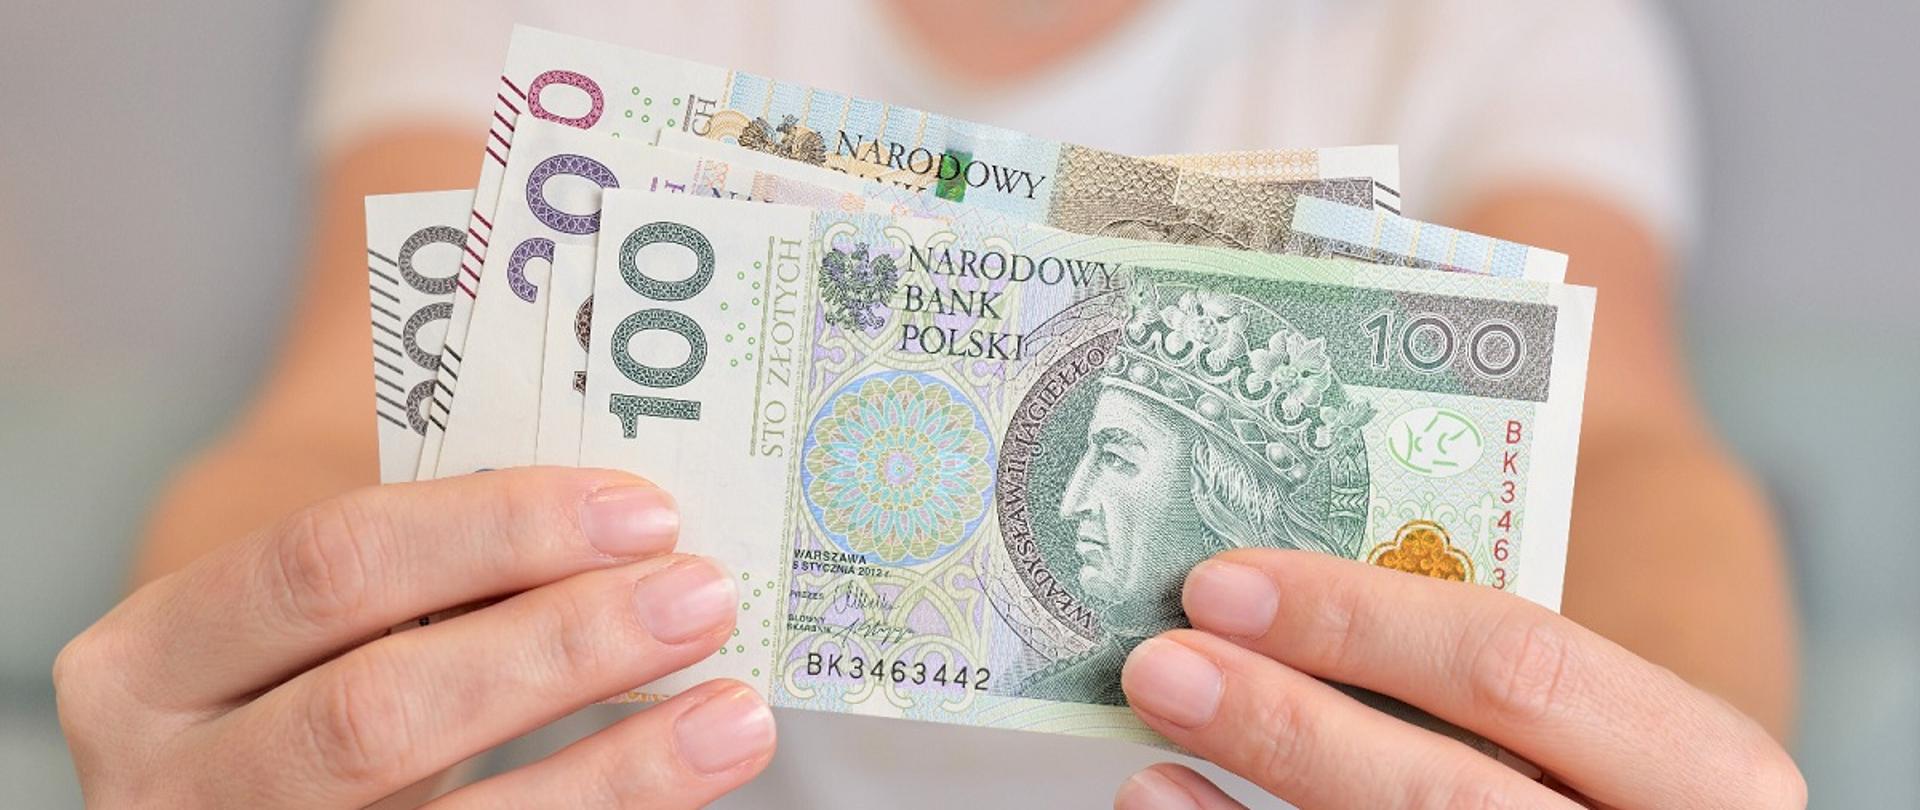 Dłonie kobiece trzymające polskie banknoty
